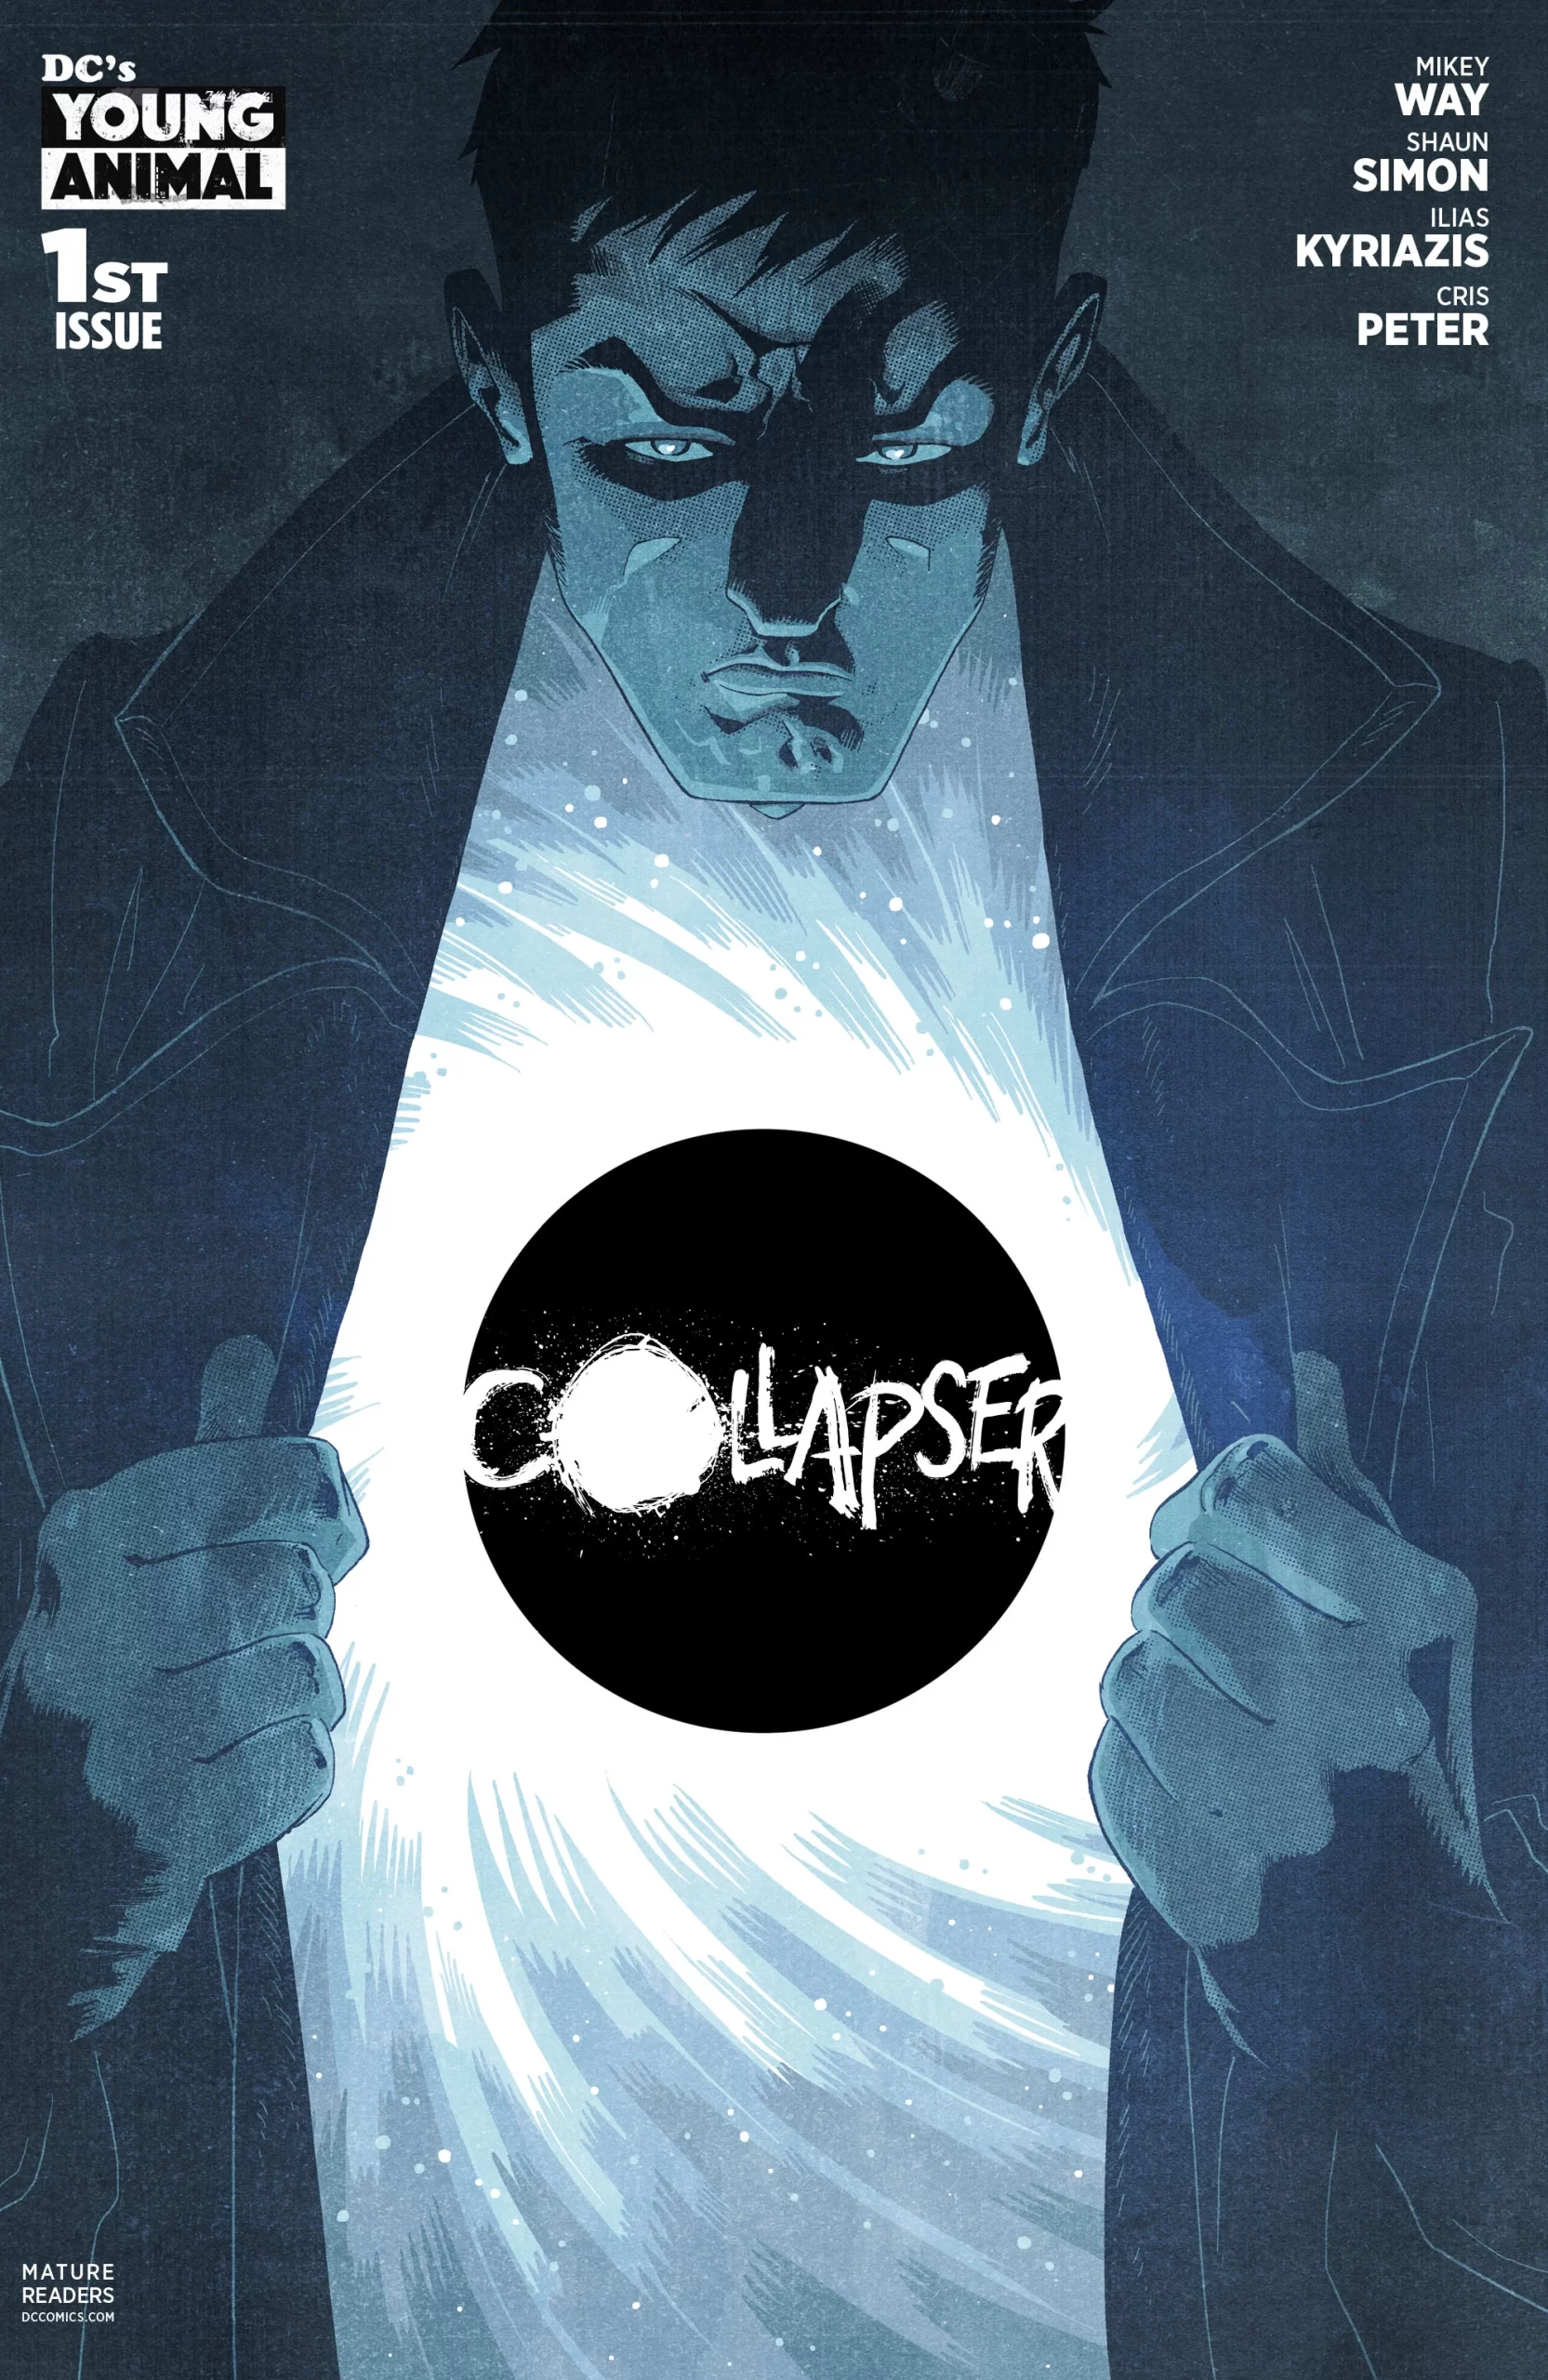 Portada de Collapser en la que vemosal protagonista abriendo su cazadora, dentro de la cual se ve un agujero negro y el título del cómic en el interior.